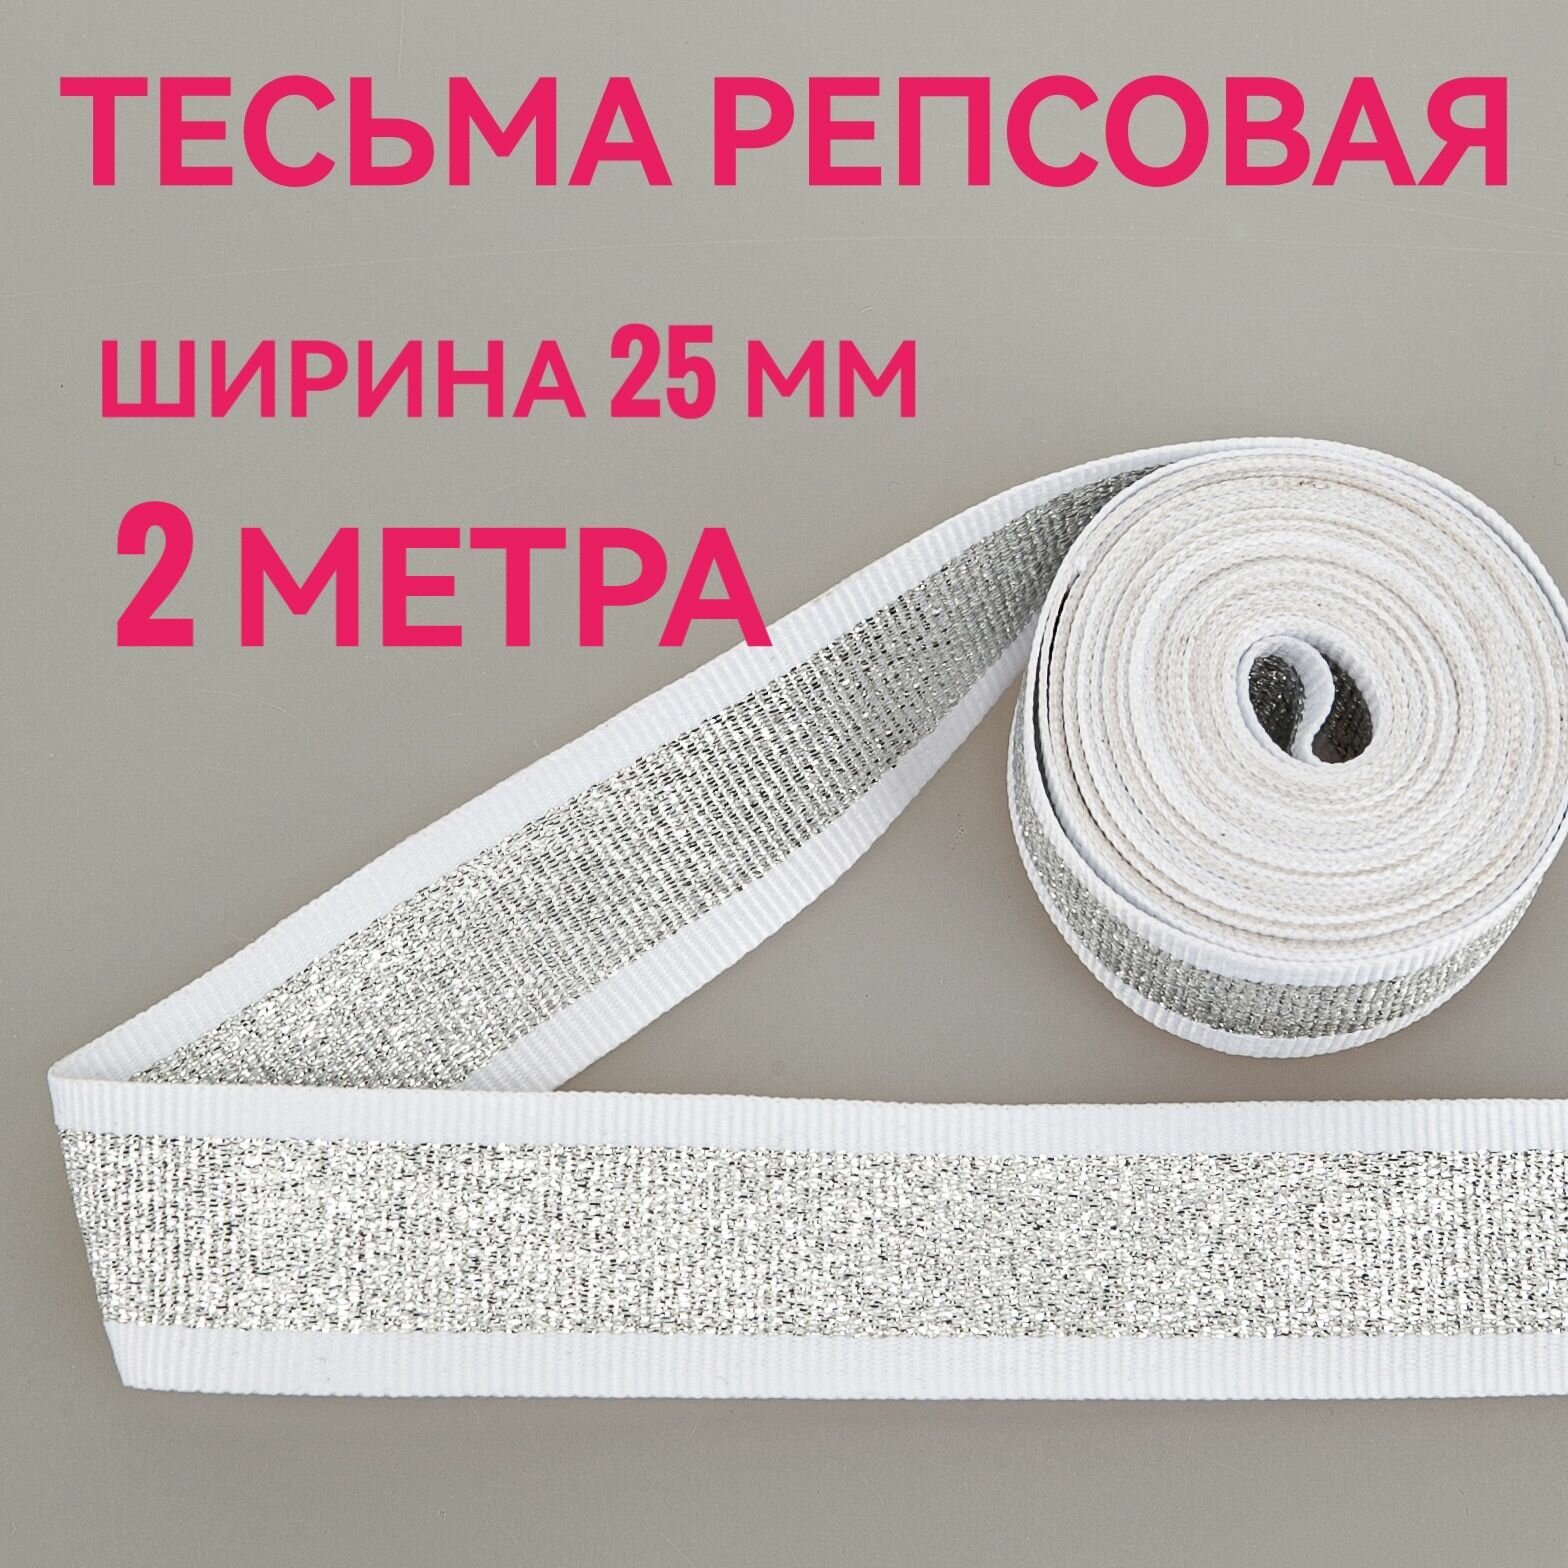 Тесьма /лента репсовая для шитья с люрексом серебро/белый ш.25 мм, в упаковке 2 м, для шитья, творчества, рукоделия.